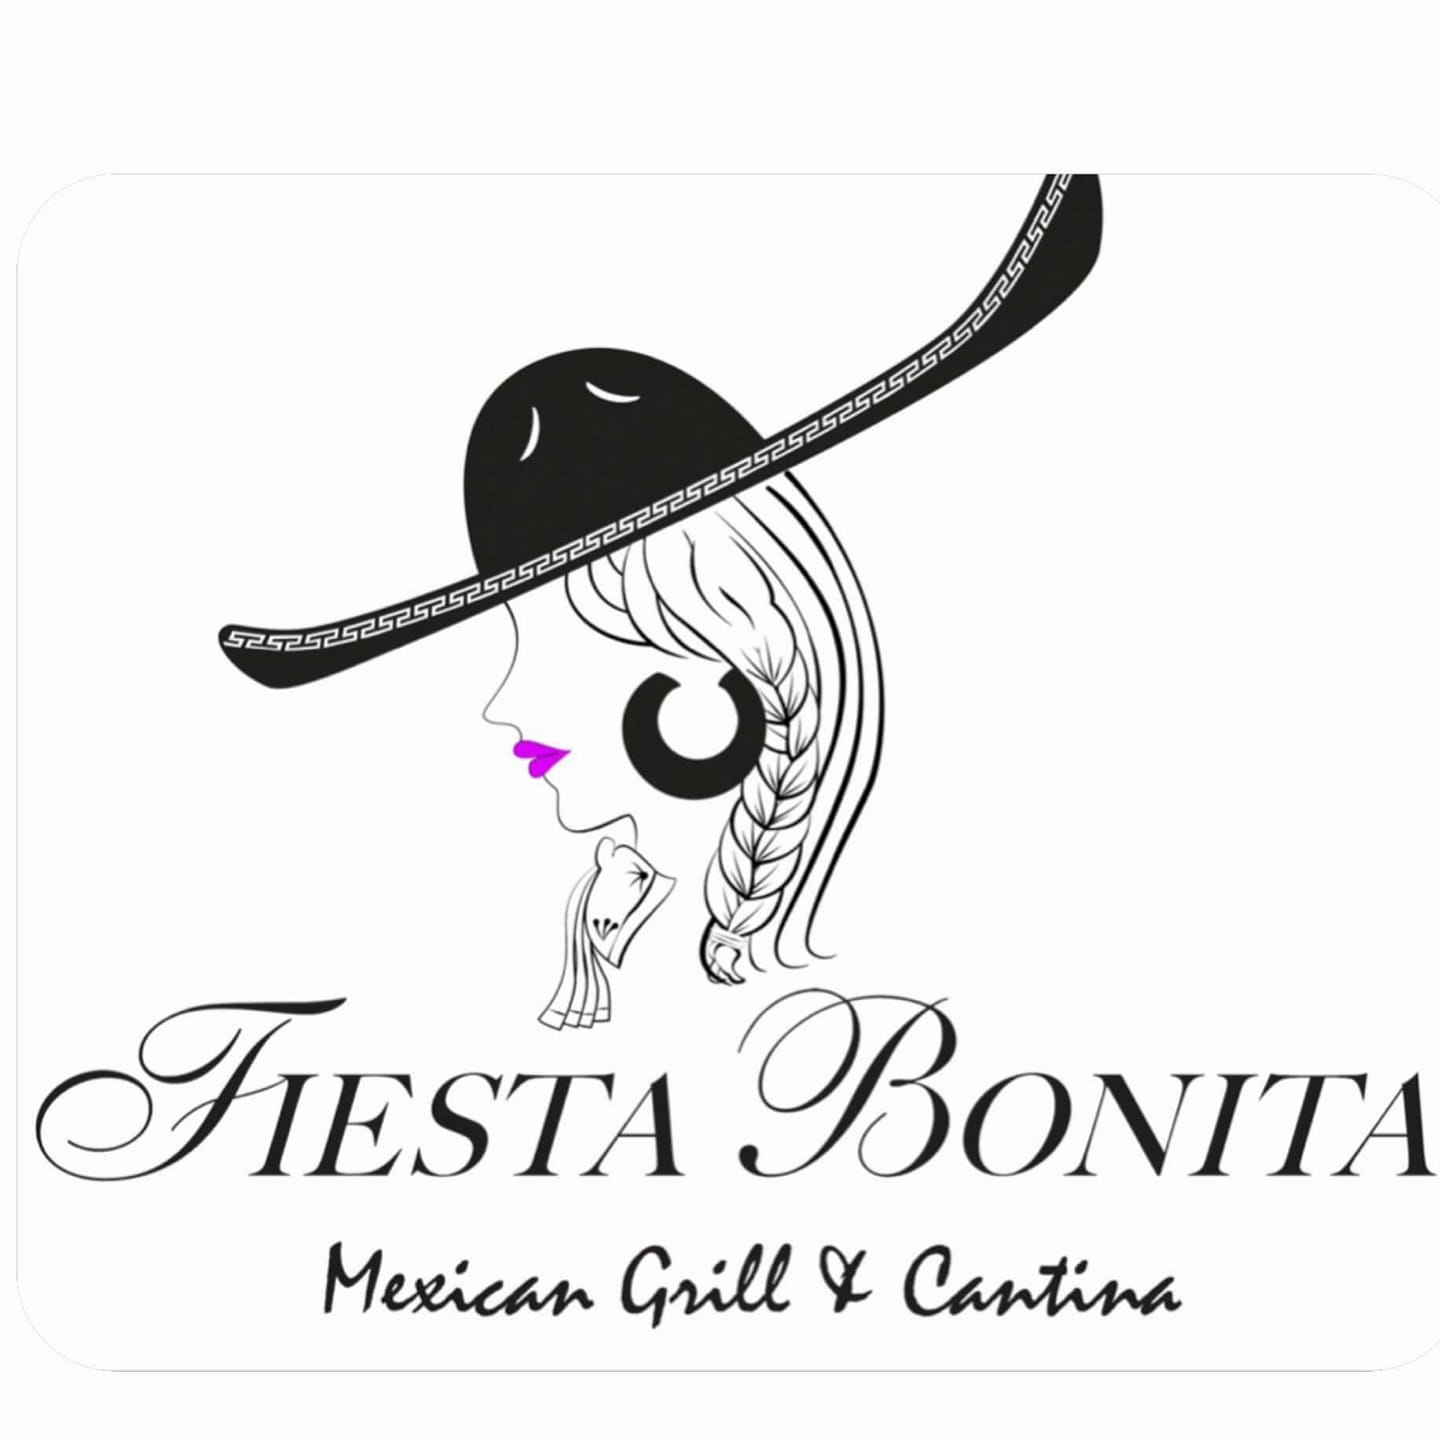 La Fiesta Bonita (Kelso, WA)